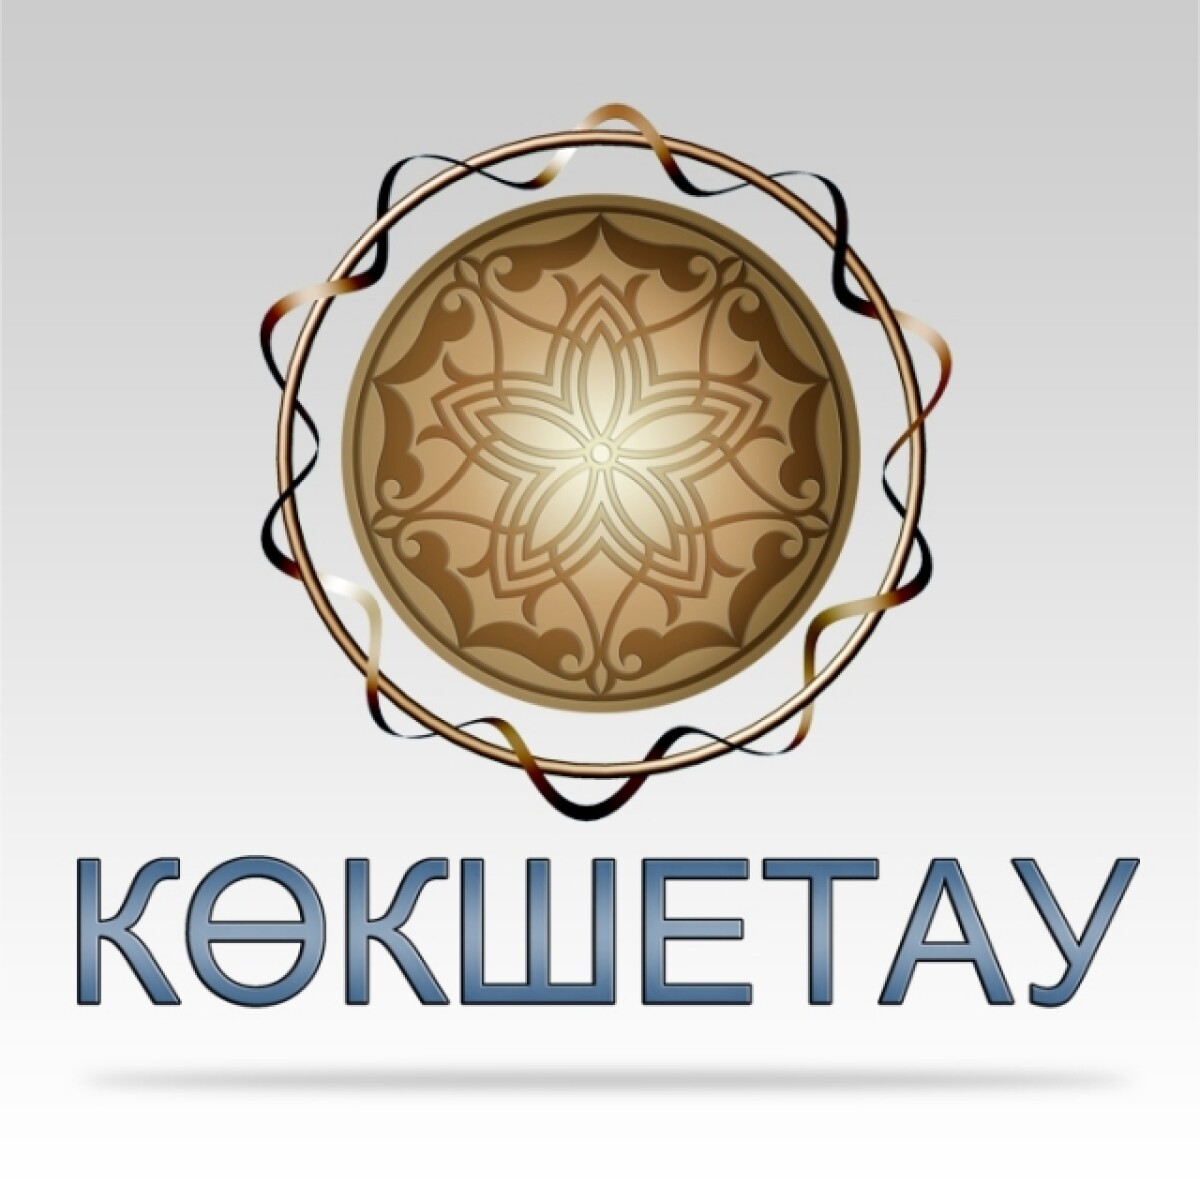 1993 жылдың 7 қазанында Көкчетав қаласына Көкшетау жаңа атауы қойылған - e-history.kz